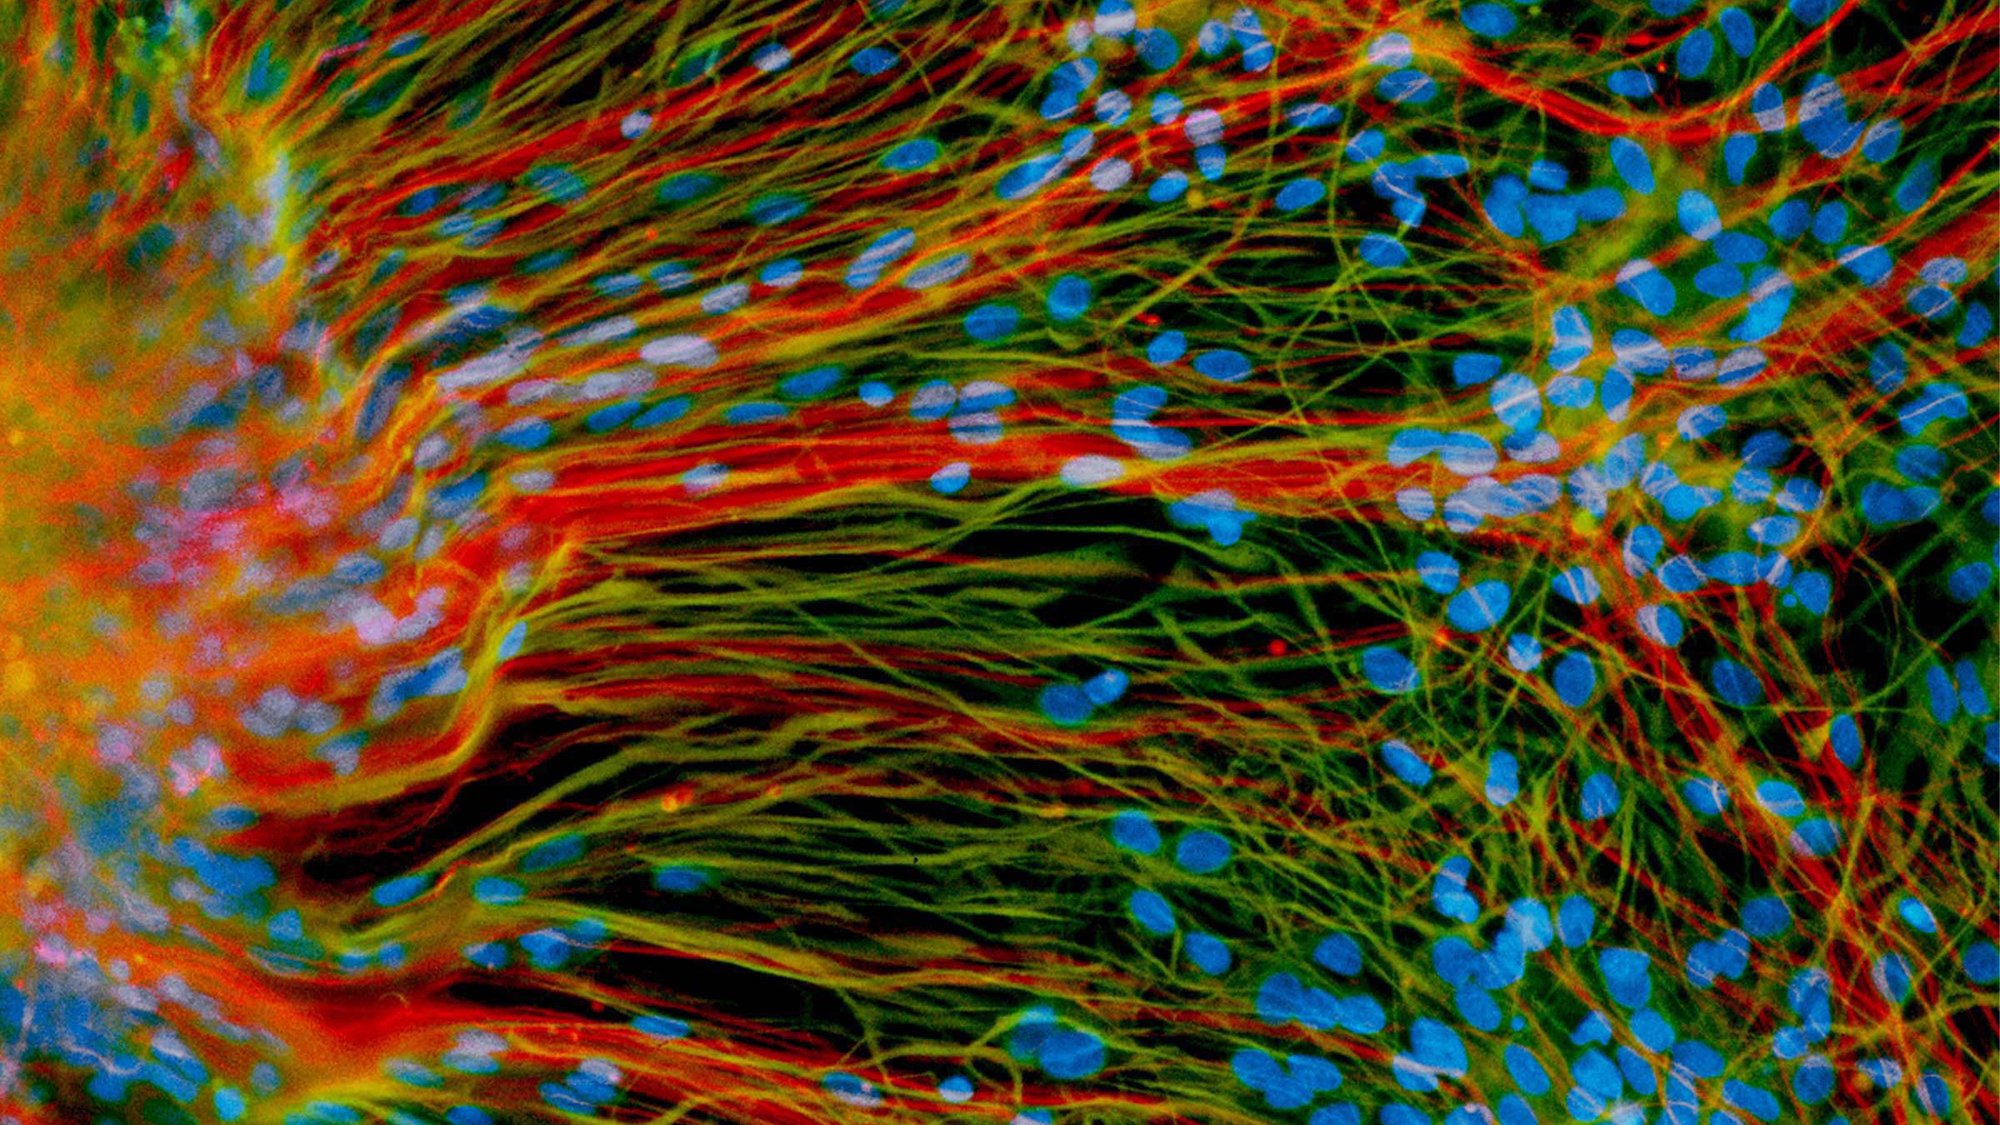 Neuronas (rojo) y células glia (verde) cultivadas en el laboratorio a partir de células madre embrionarias humanas.